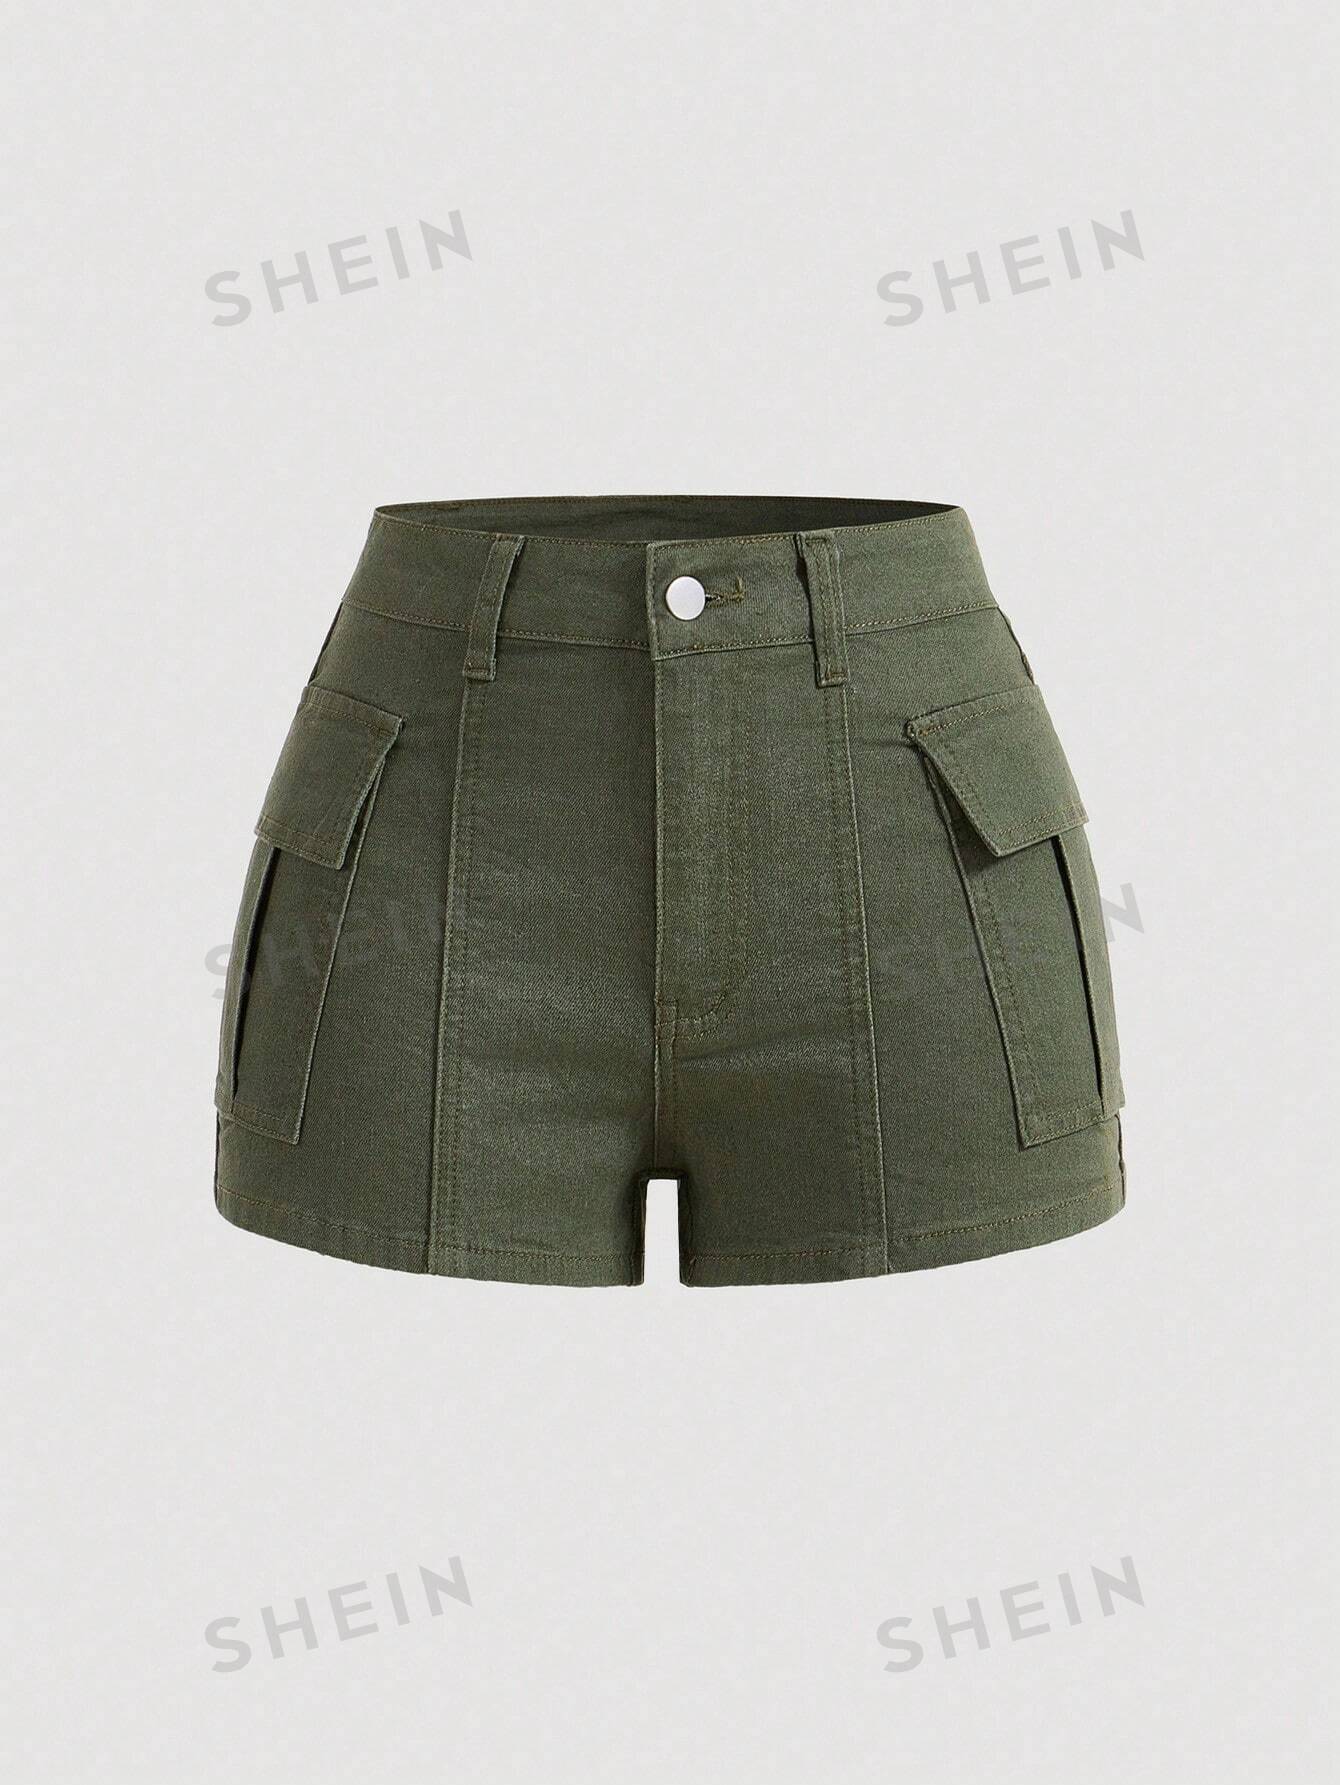 SHEIN MOD Женские популярные шорты, джинсовые джинсовые шорты, оливково-зеленый шорты promod джинсовые 44 размер